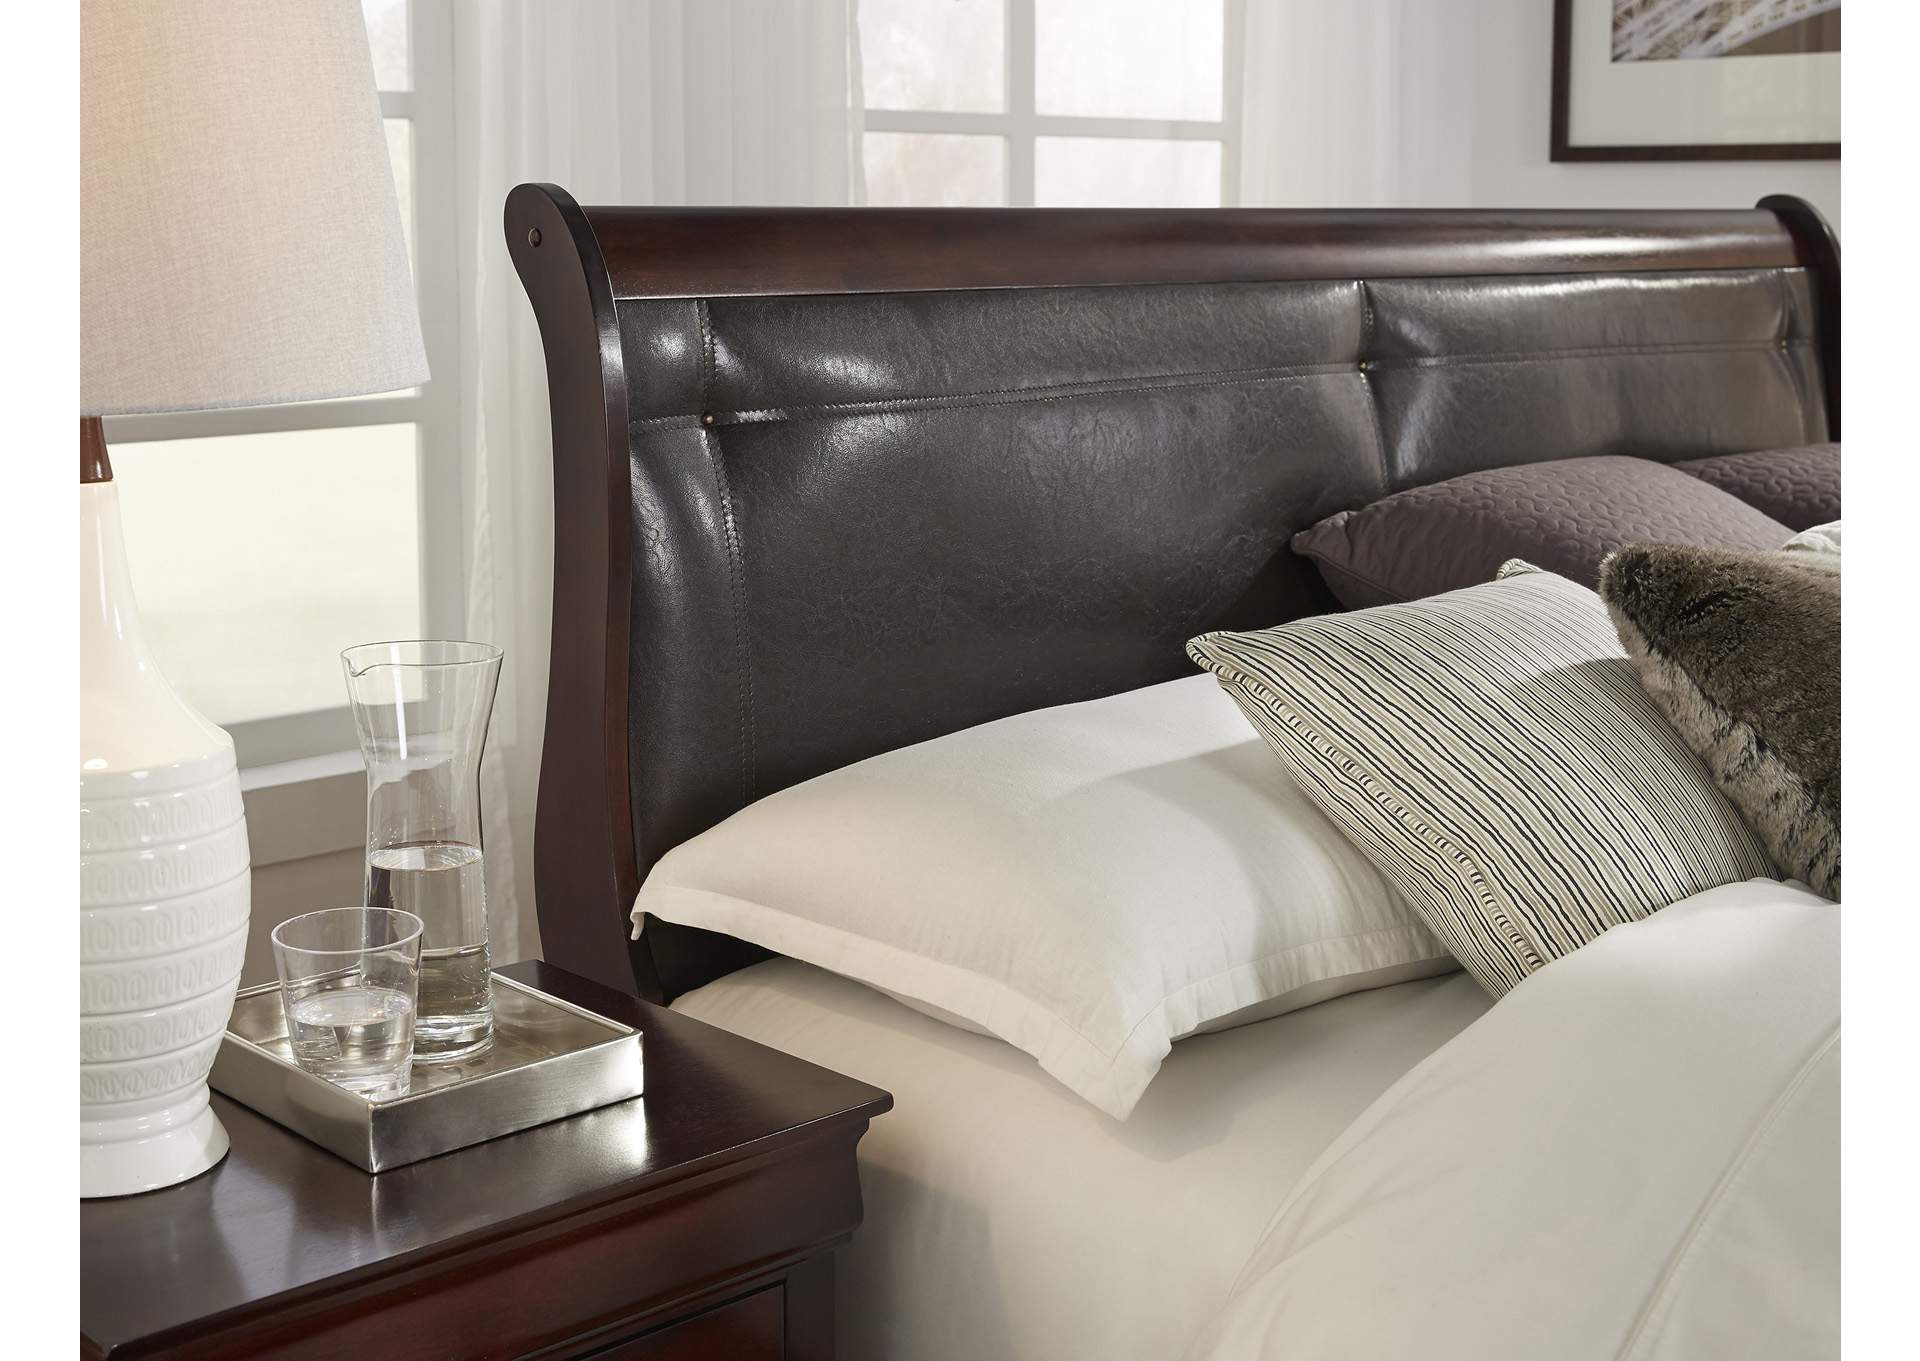 Merlot Marley Full Bed,Global Furniture USA